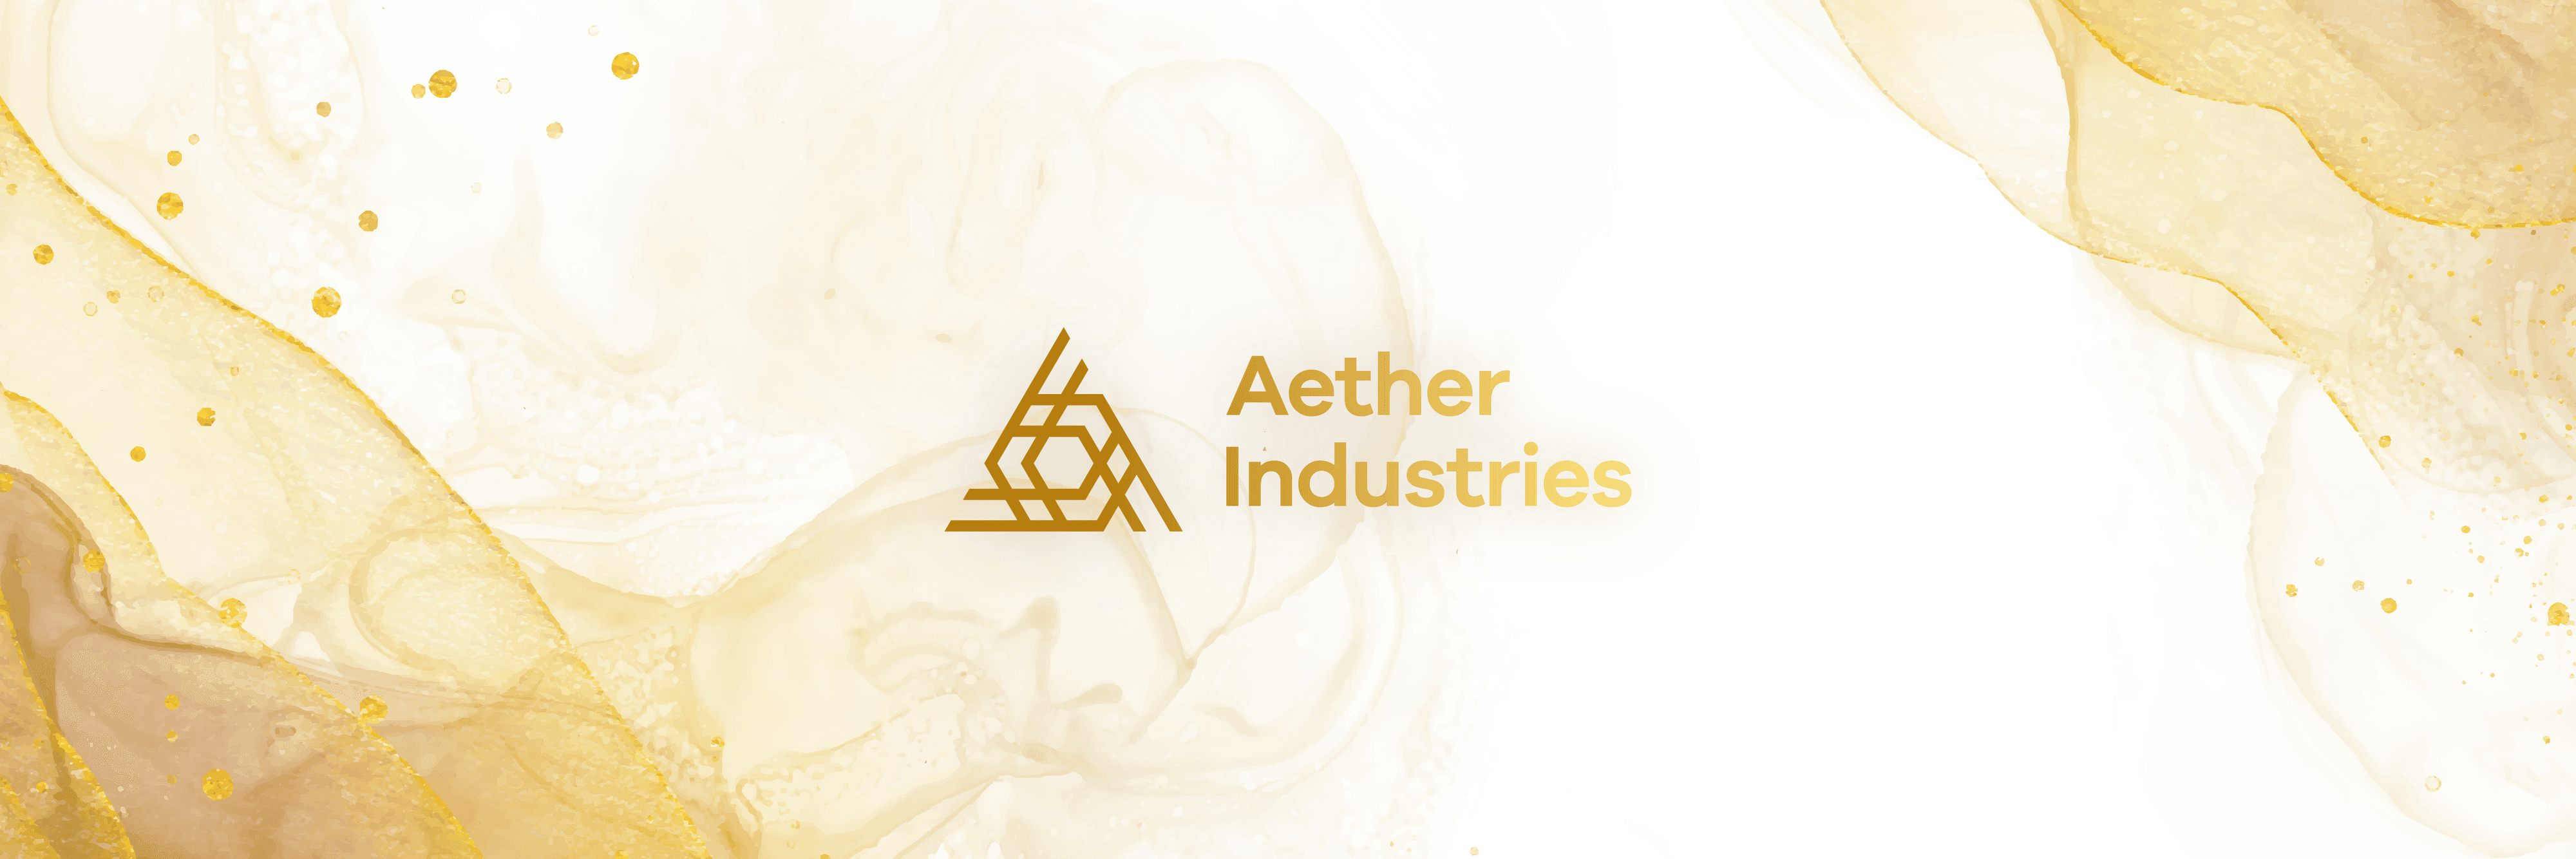 AetherIndustries banner